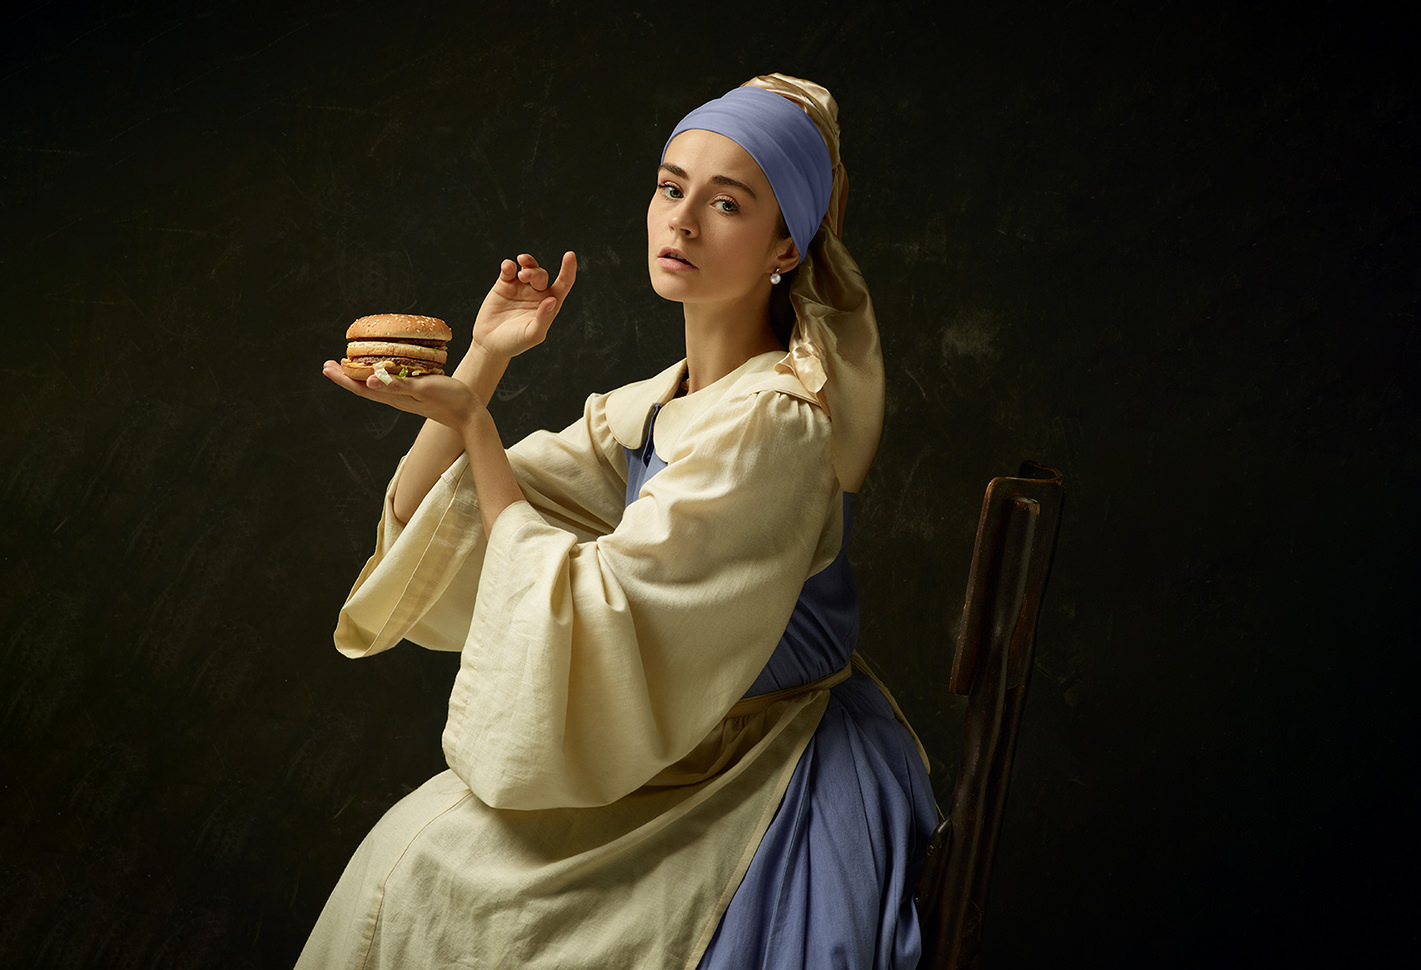 Frau, die wie „Das Mädchen mit dem Perlenohrring“ von Jan Vermeer gestyled ist, hält kunstvoll einen Hamburger in der Hand.